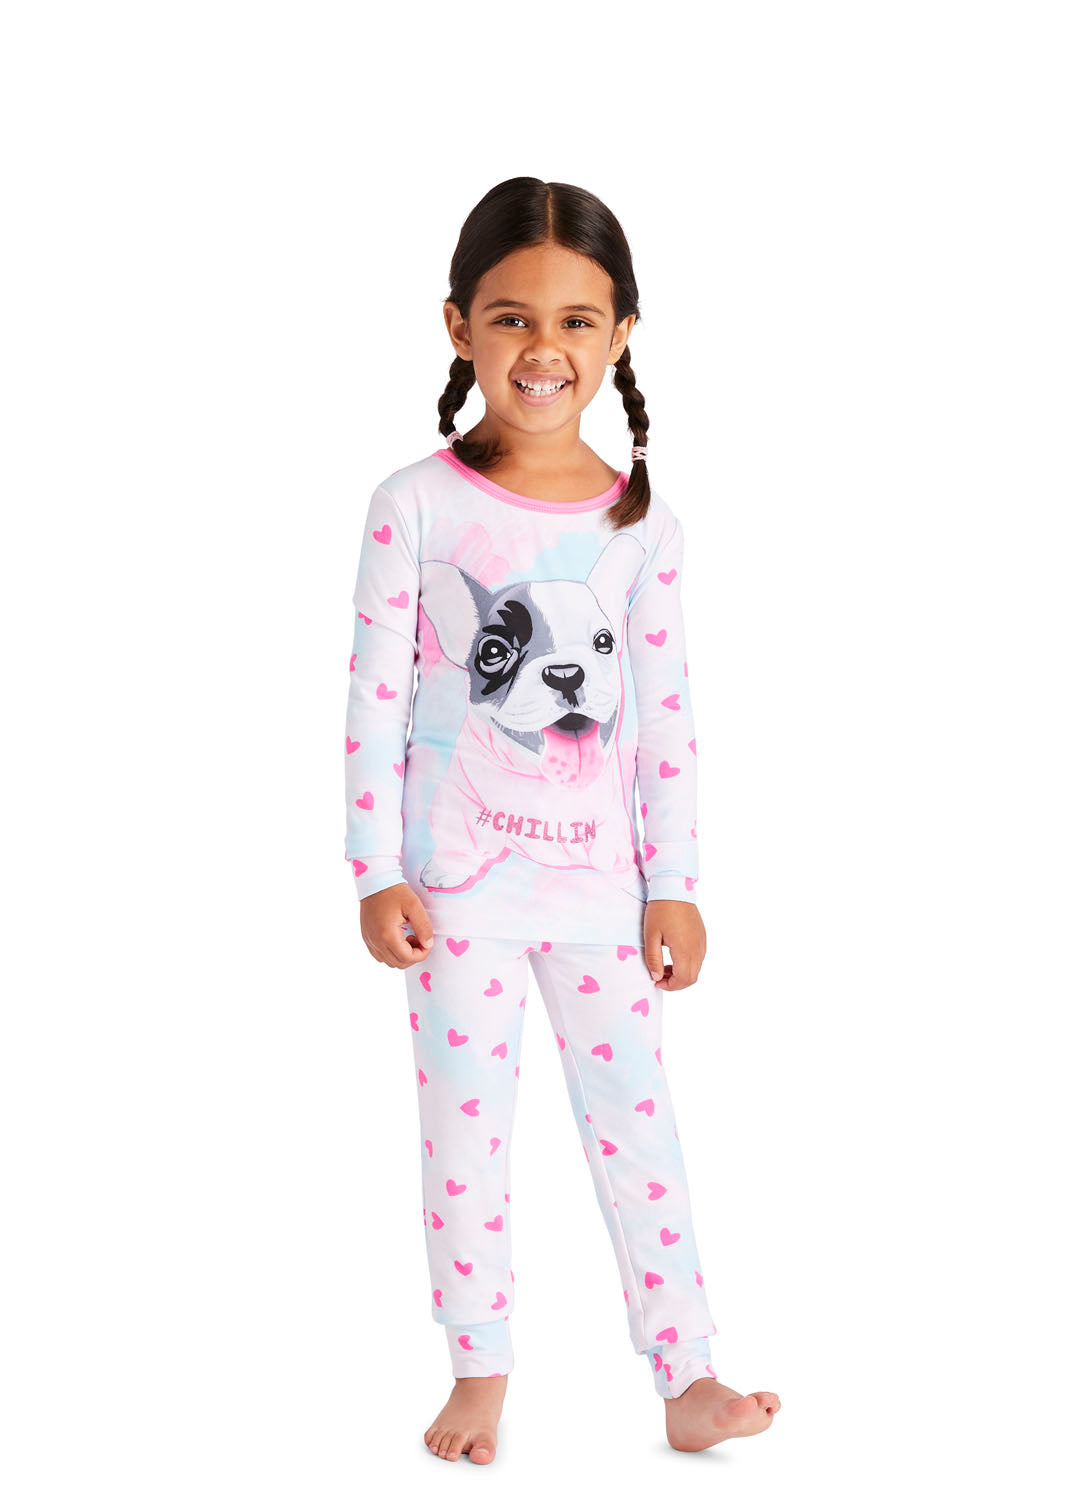 Little Girl wearing Pink Dog Pajama Set